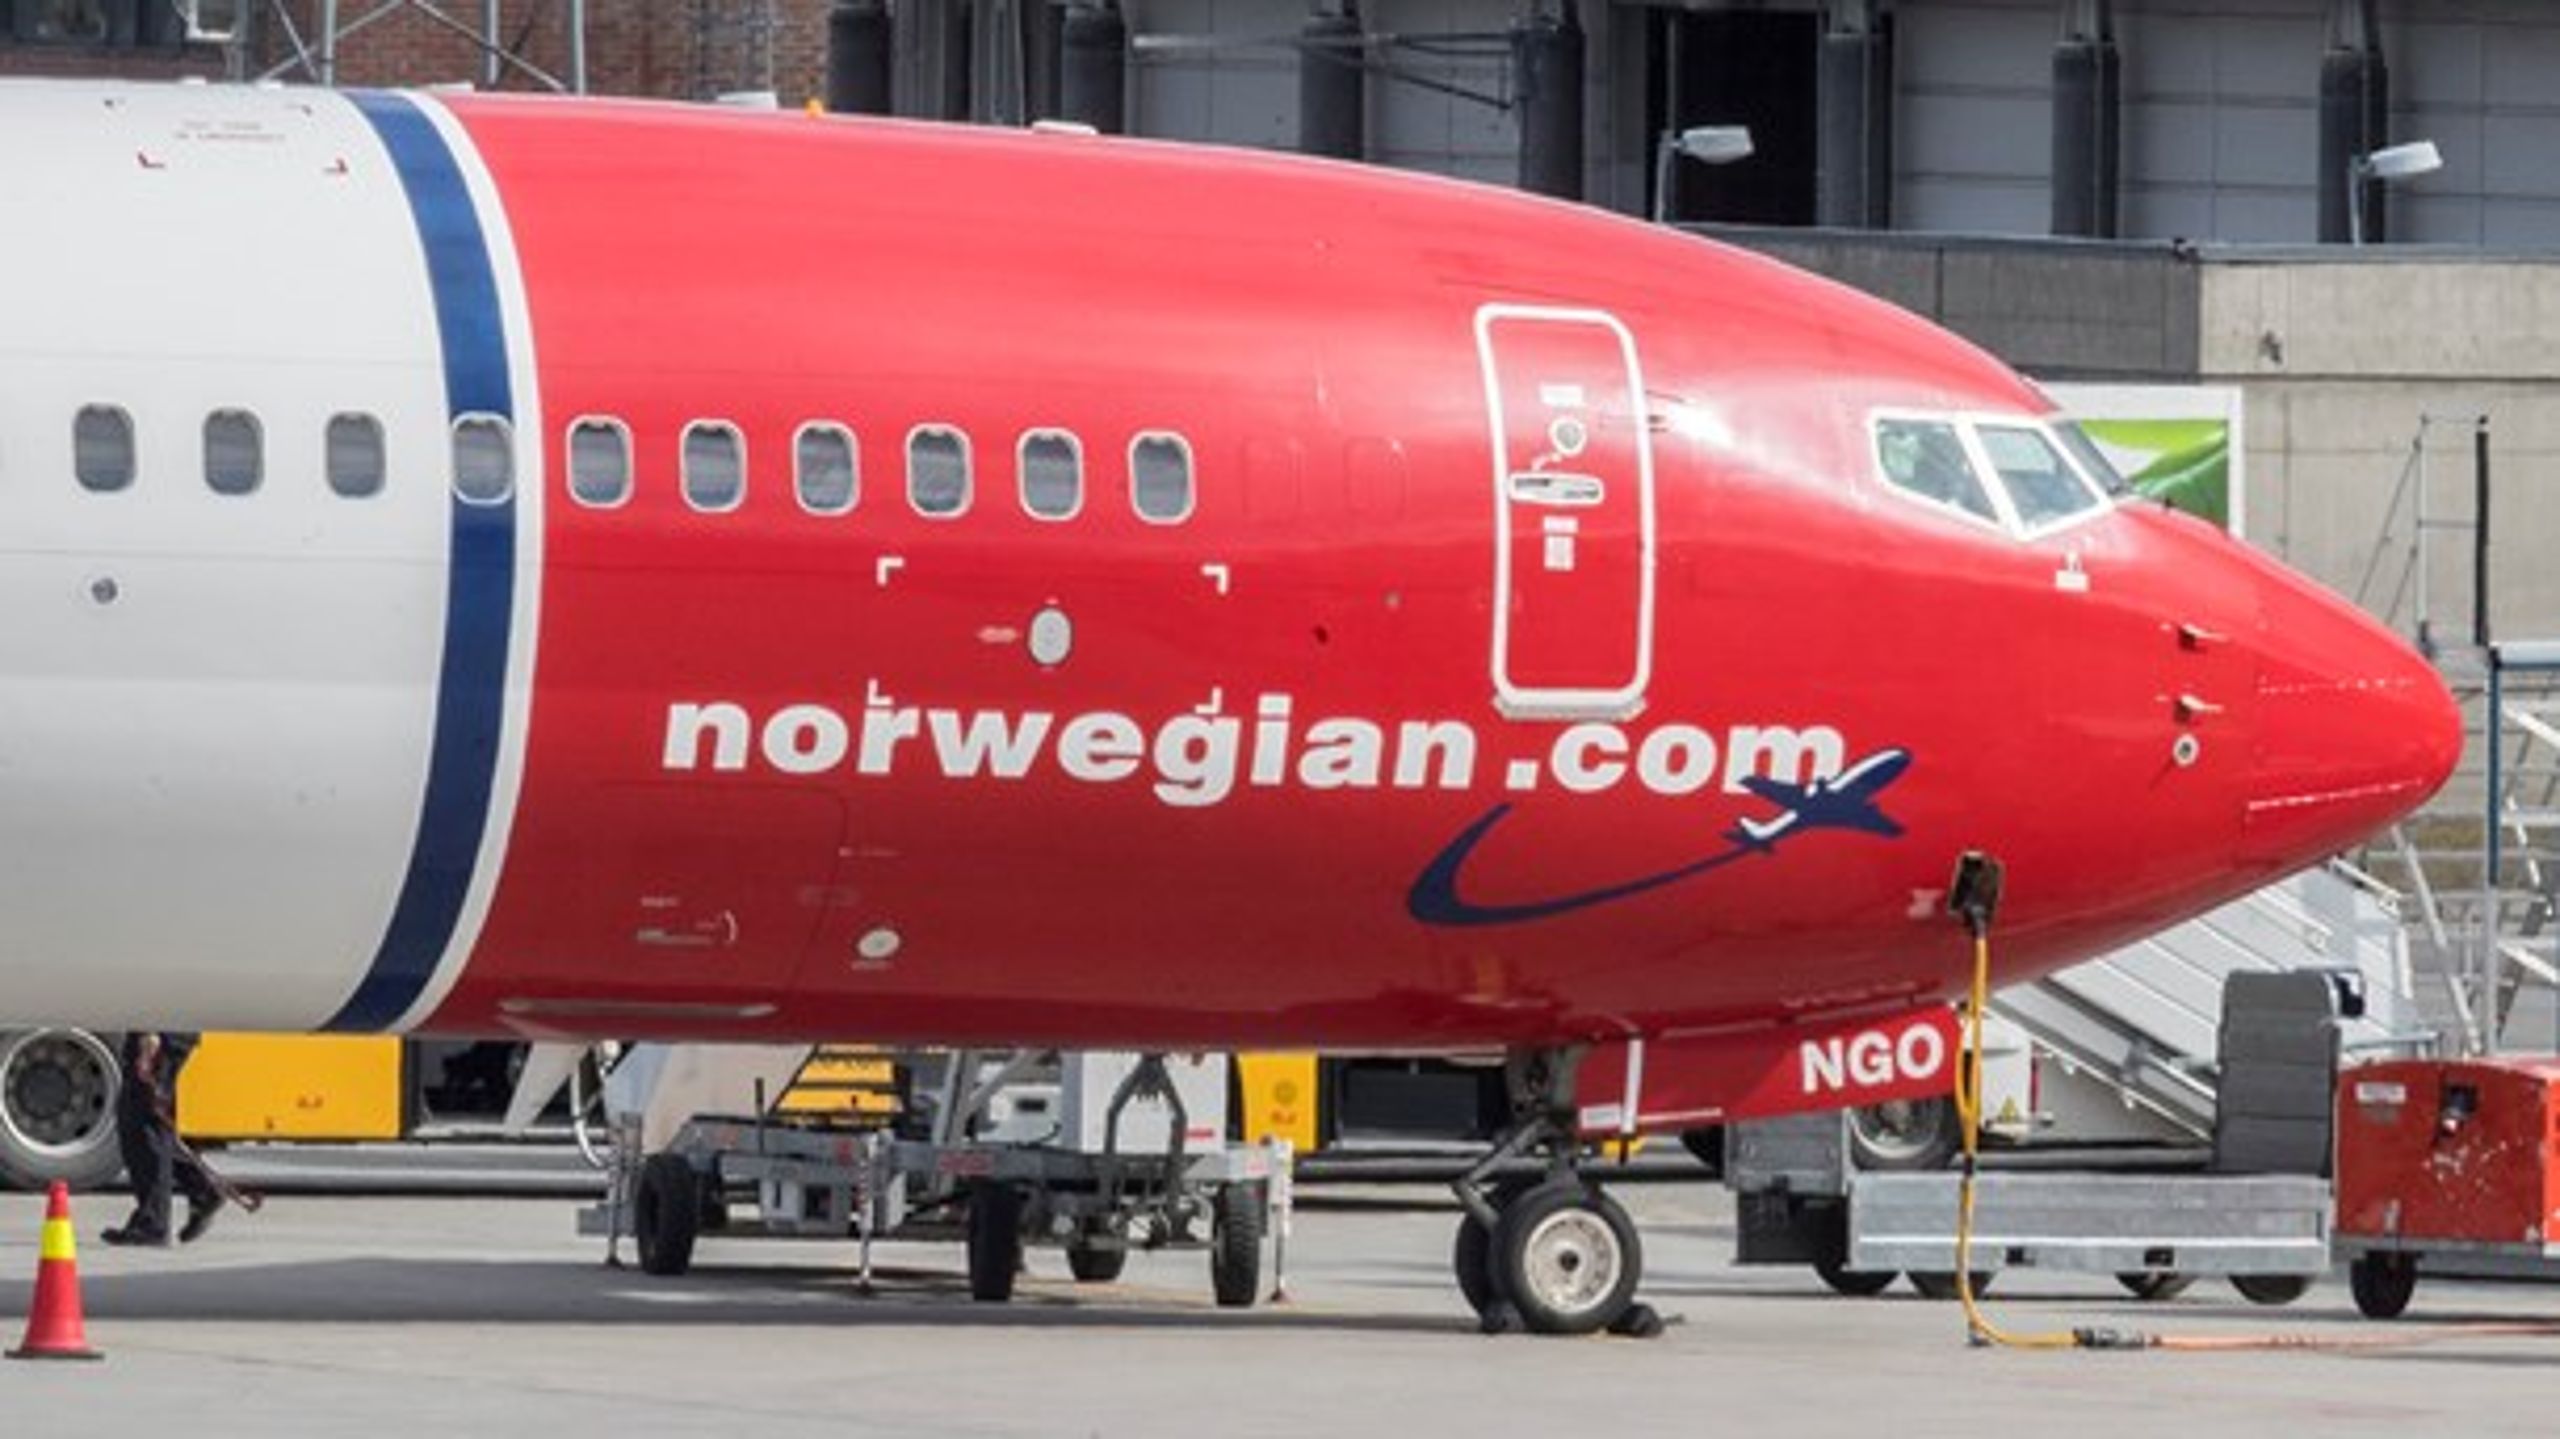 Det norske luftfartsselskab Norwegian må igen ufrivilligt lægge navn til en falsk kampagne.